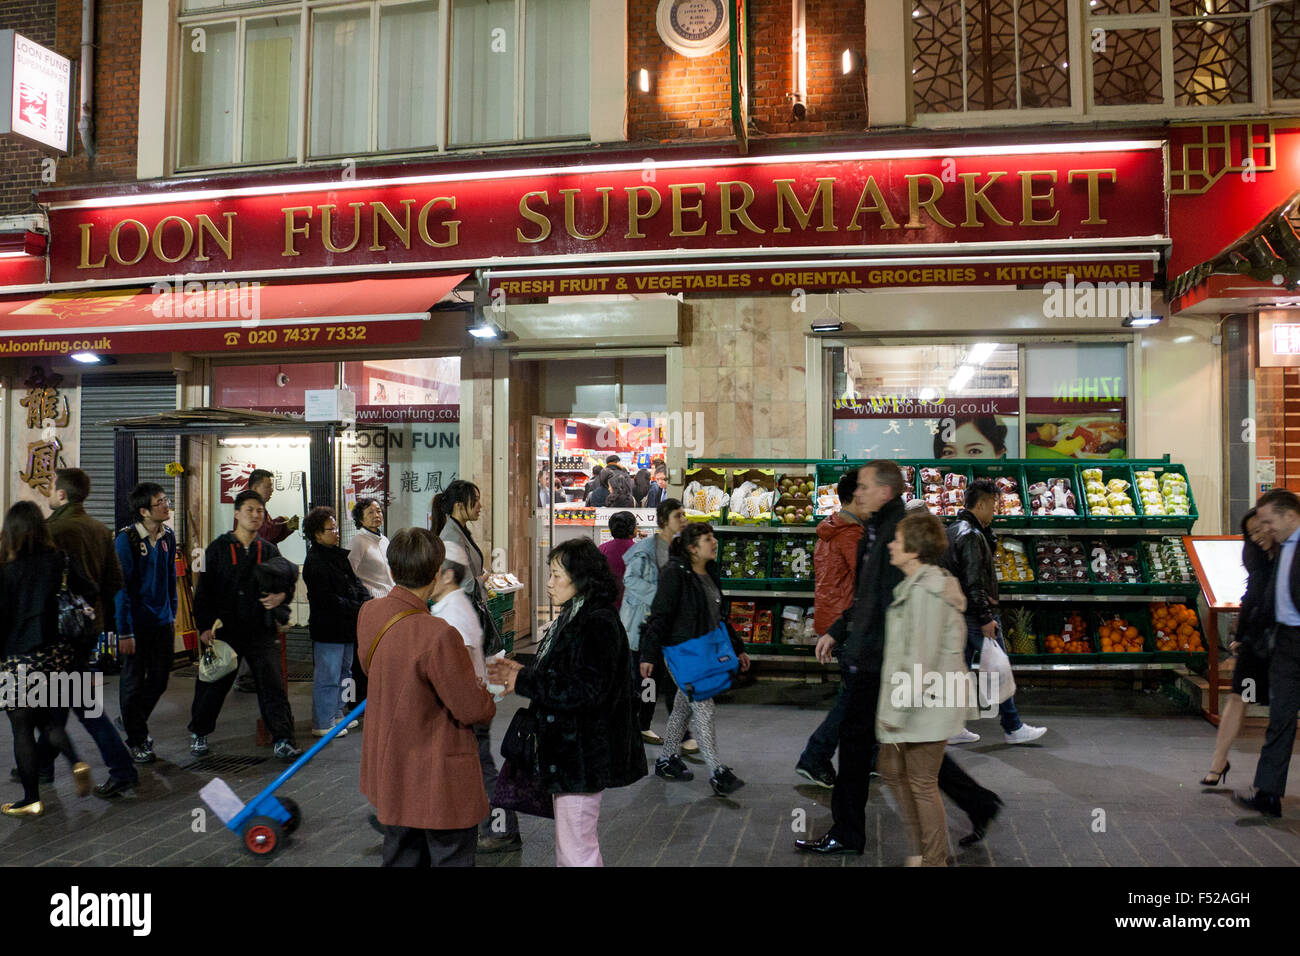 Scène de rue animée à l'extérieur de Loon Fung supermarché sur Gerrard Street dans le quartier chinois de Londres West End England UK Banque D'Images